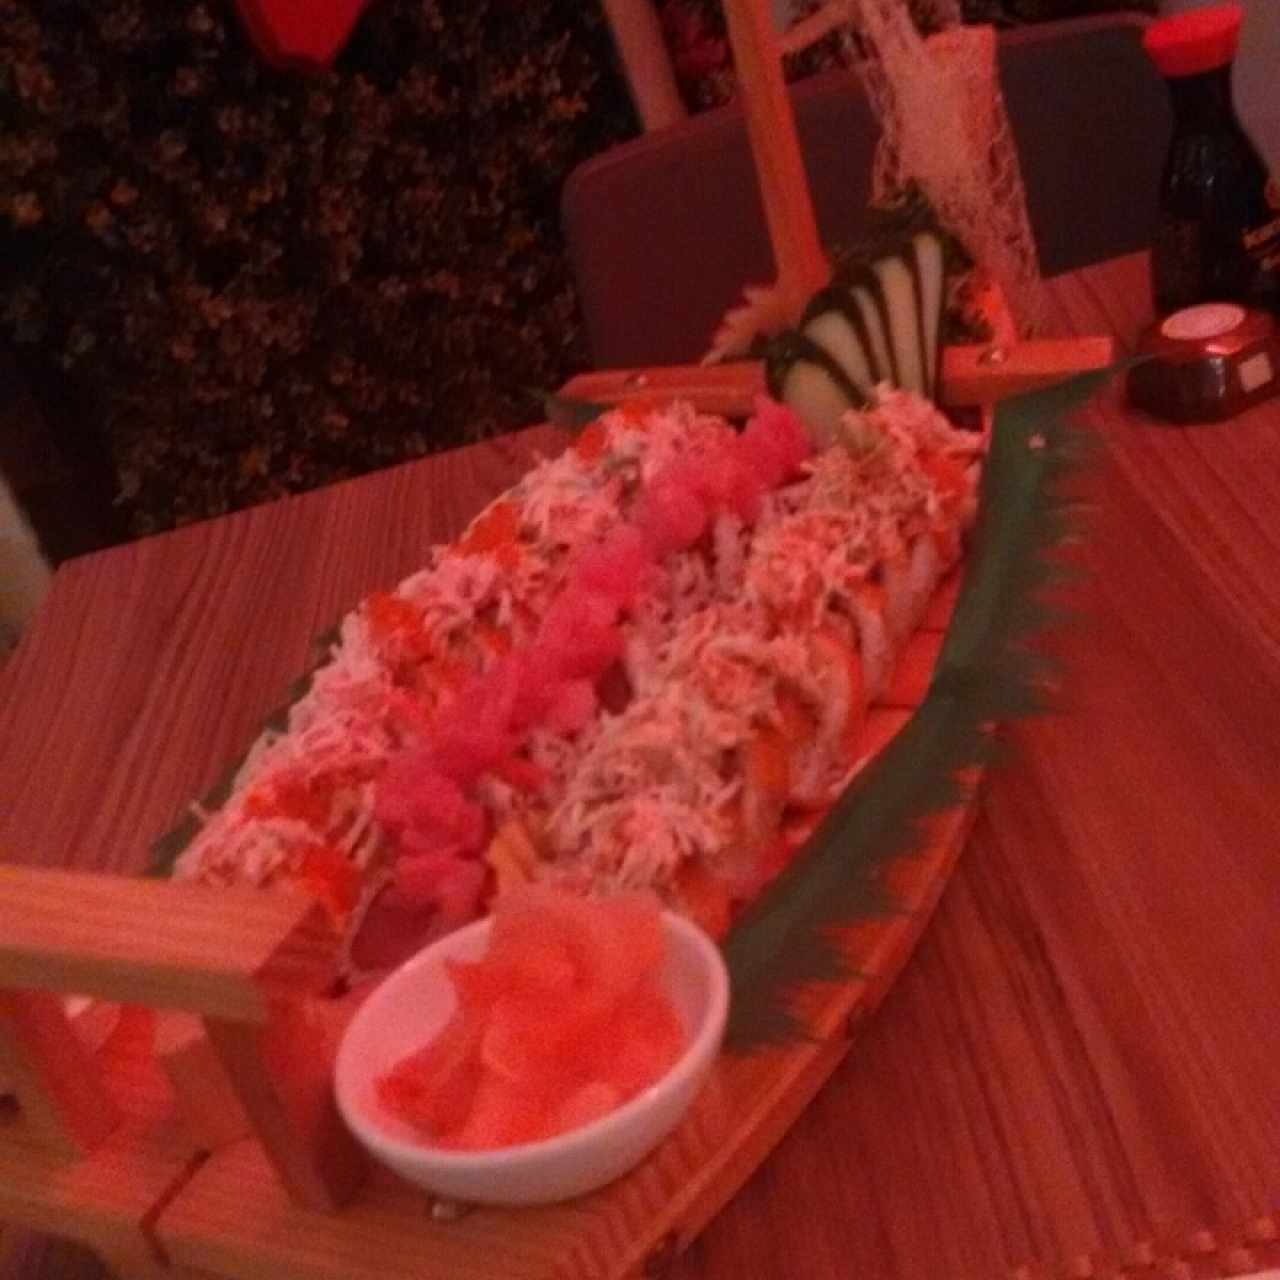 Barco con sushi